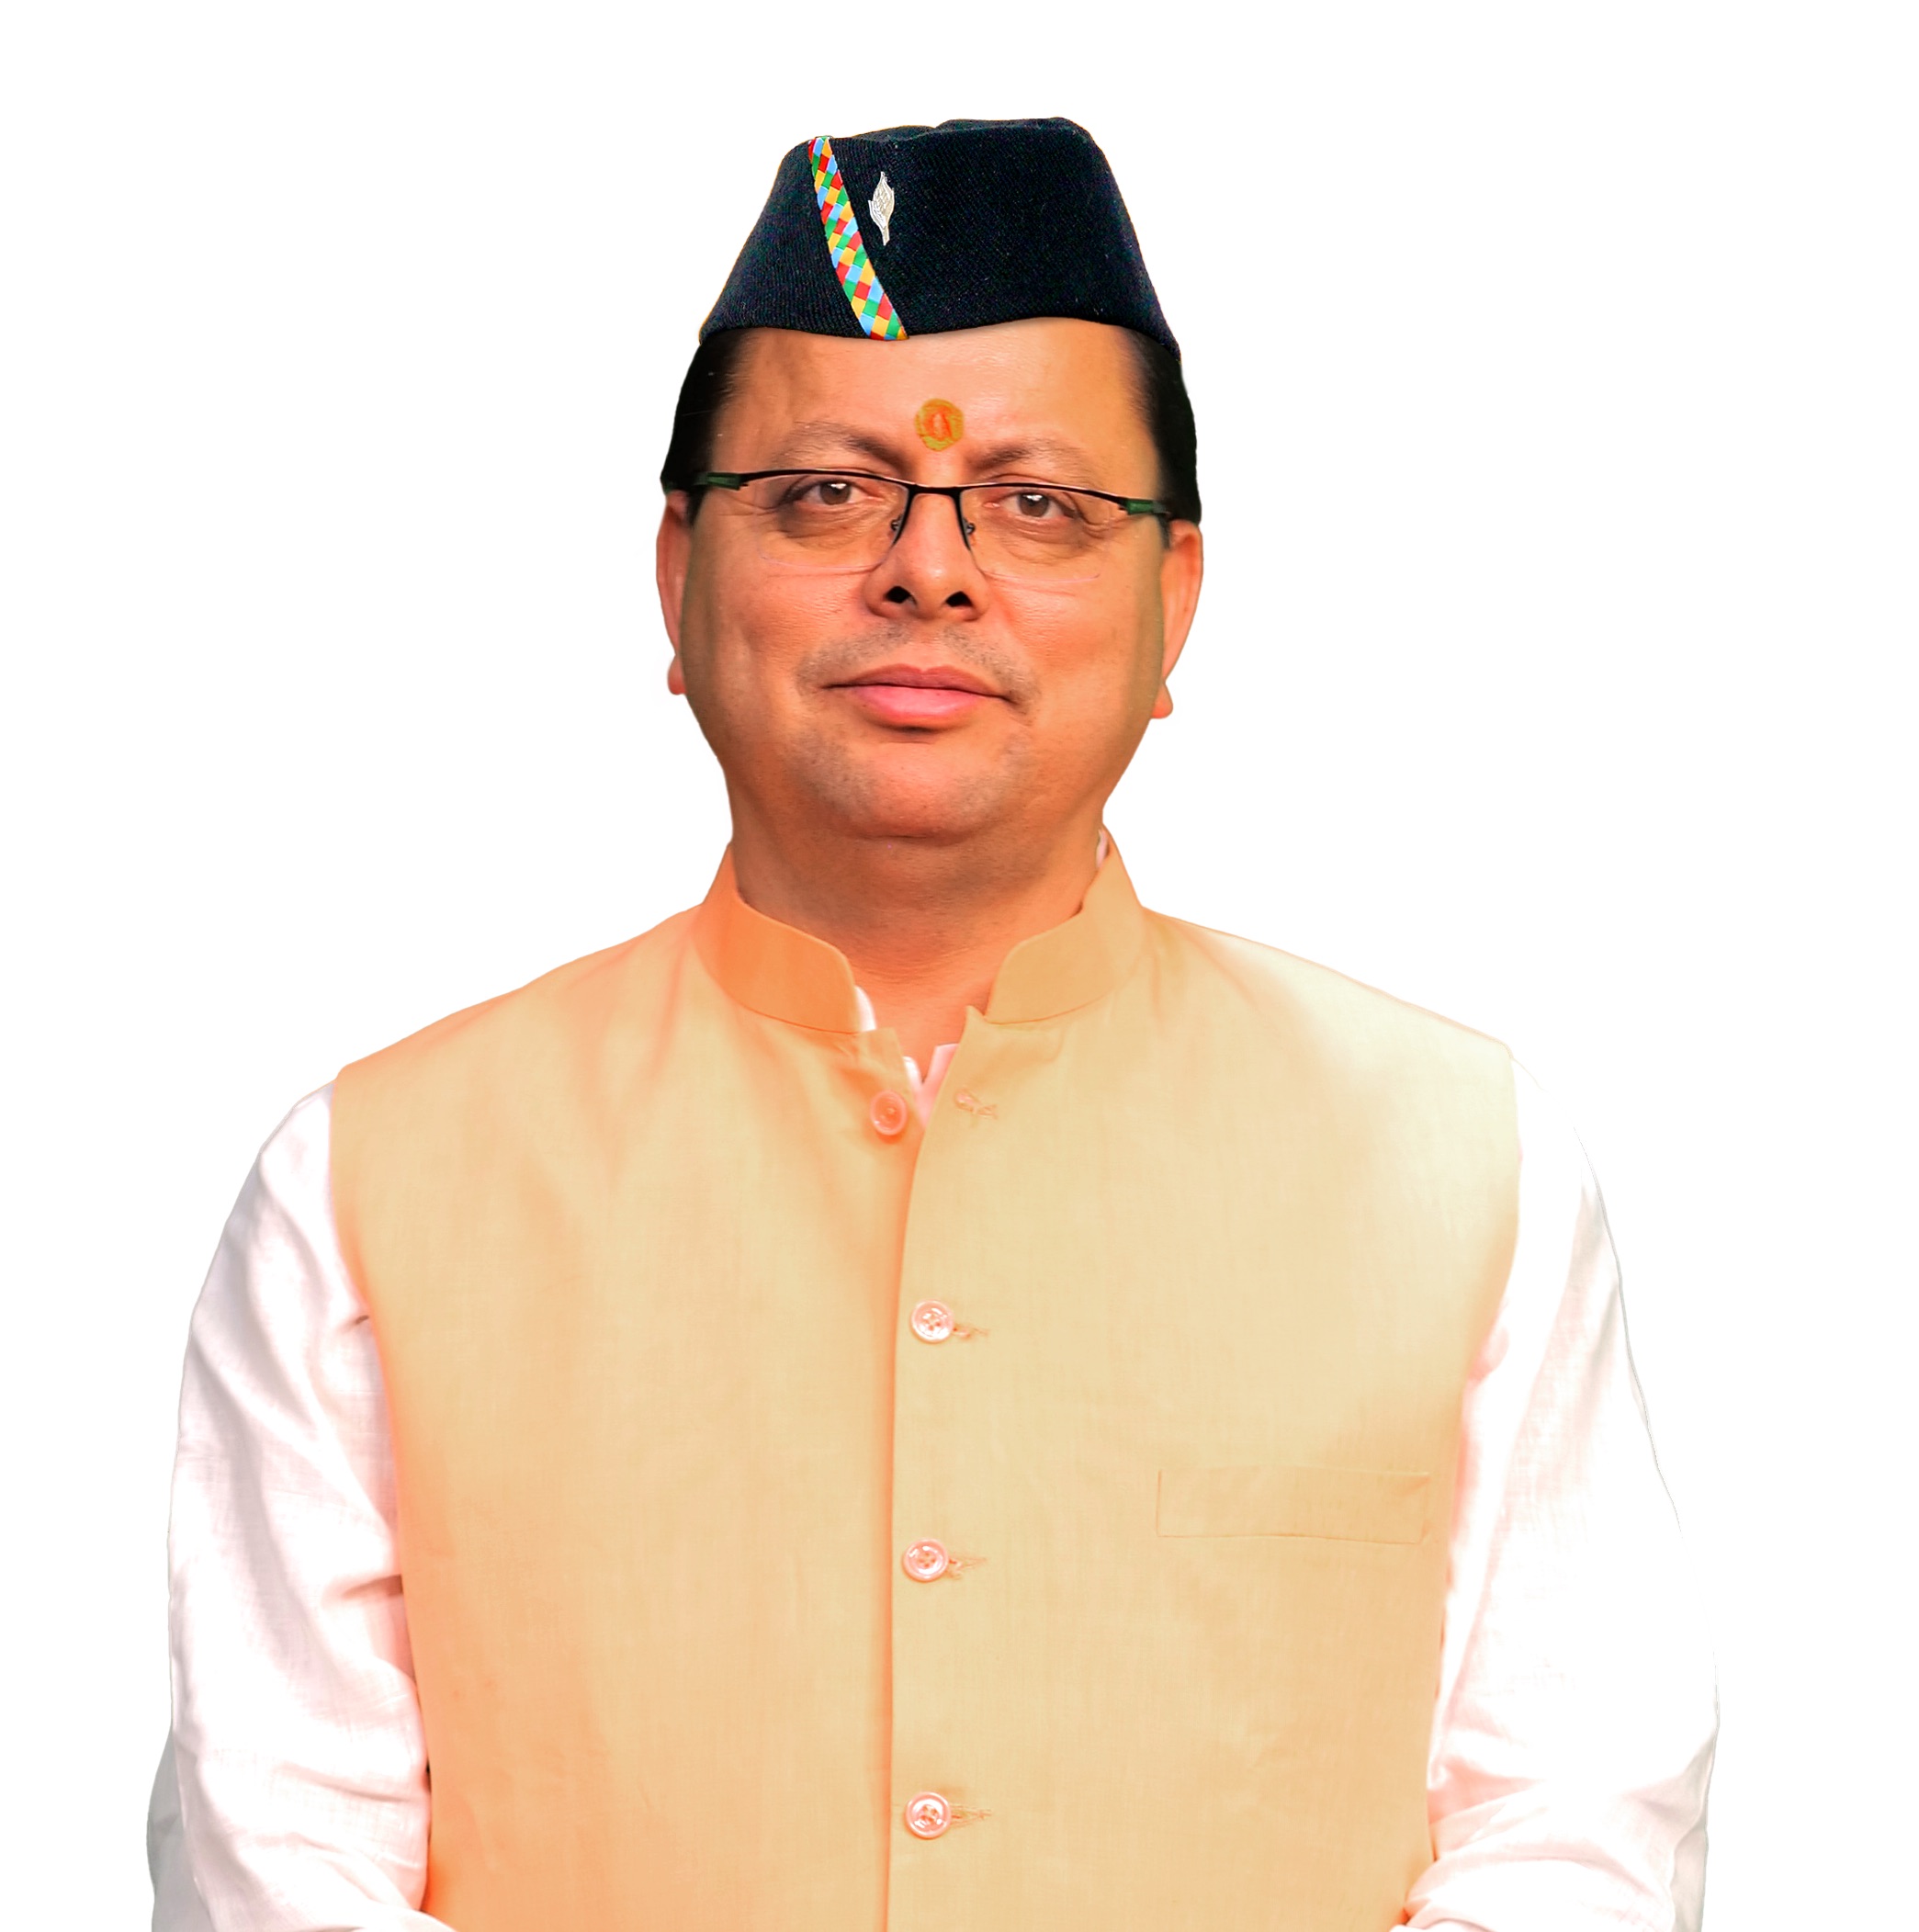 Hon'ble Transport Minister, Govt. of Uttarakhand